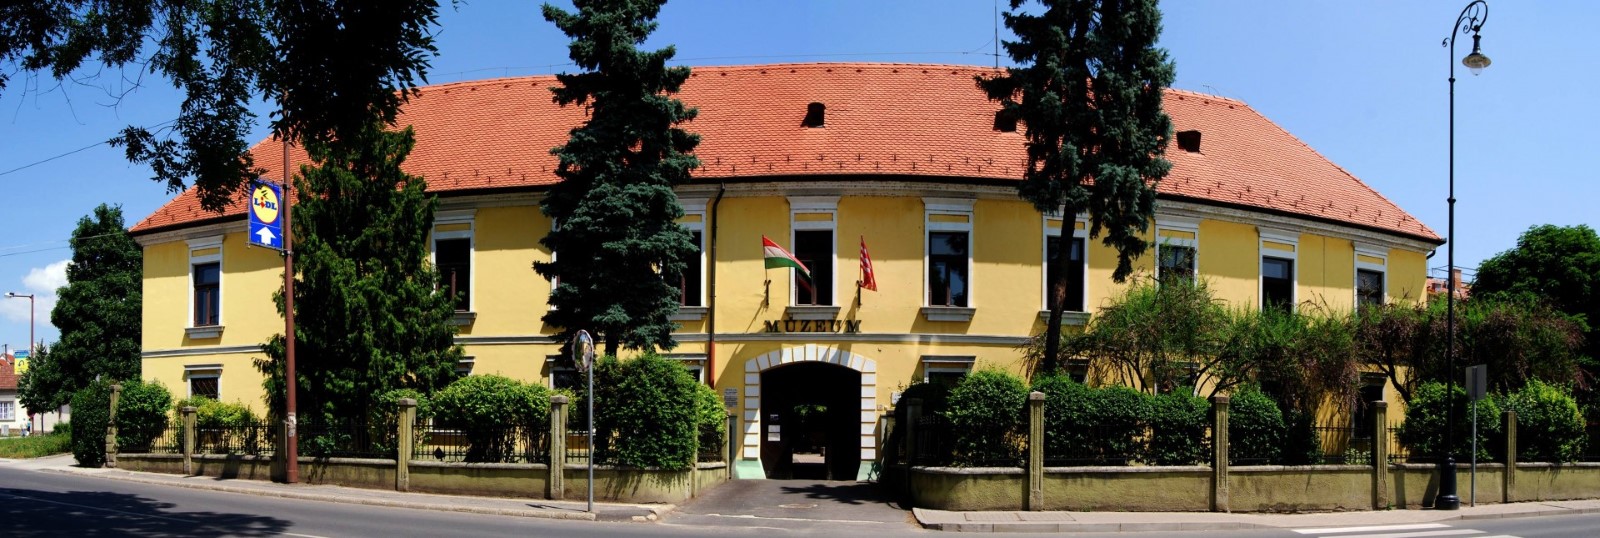 Duna Múzeum nyitvatartás